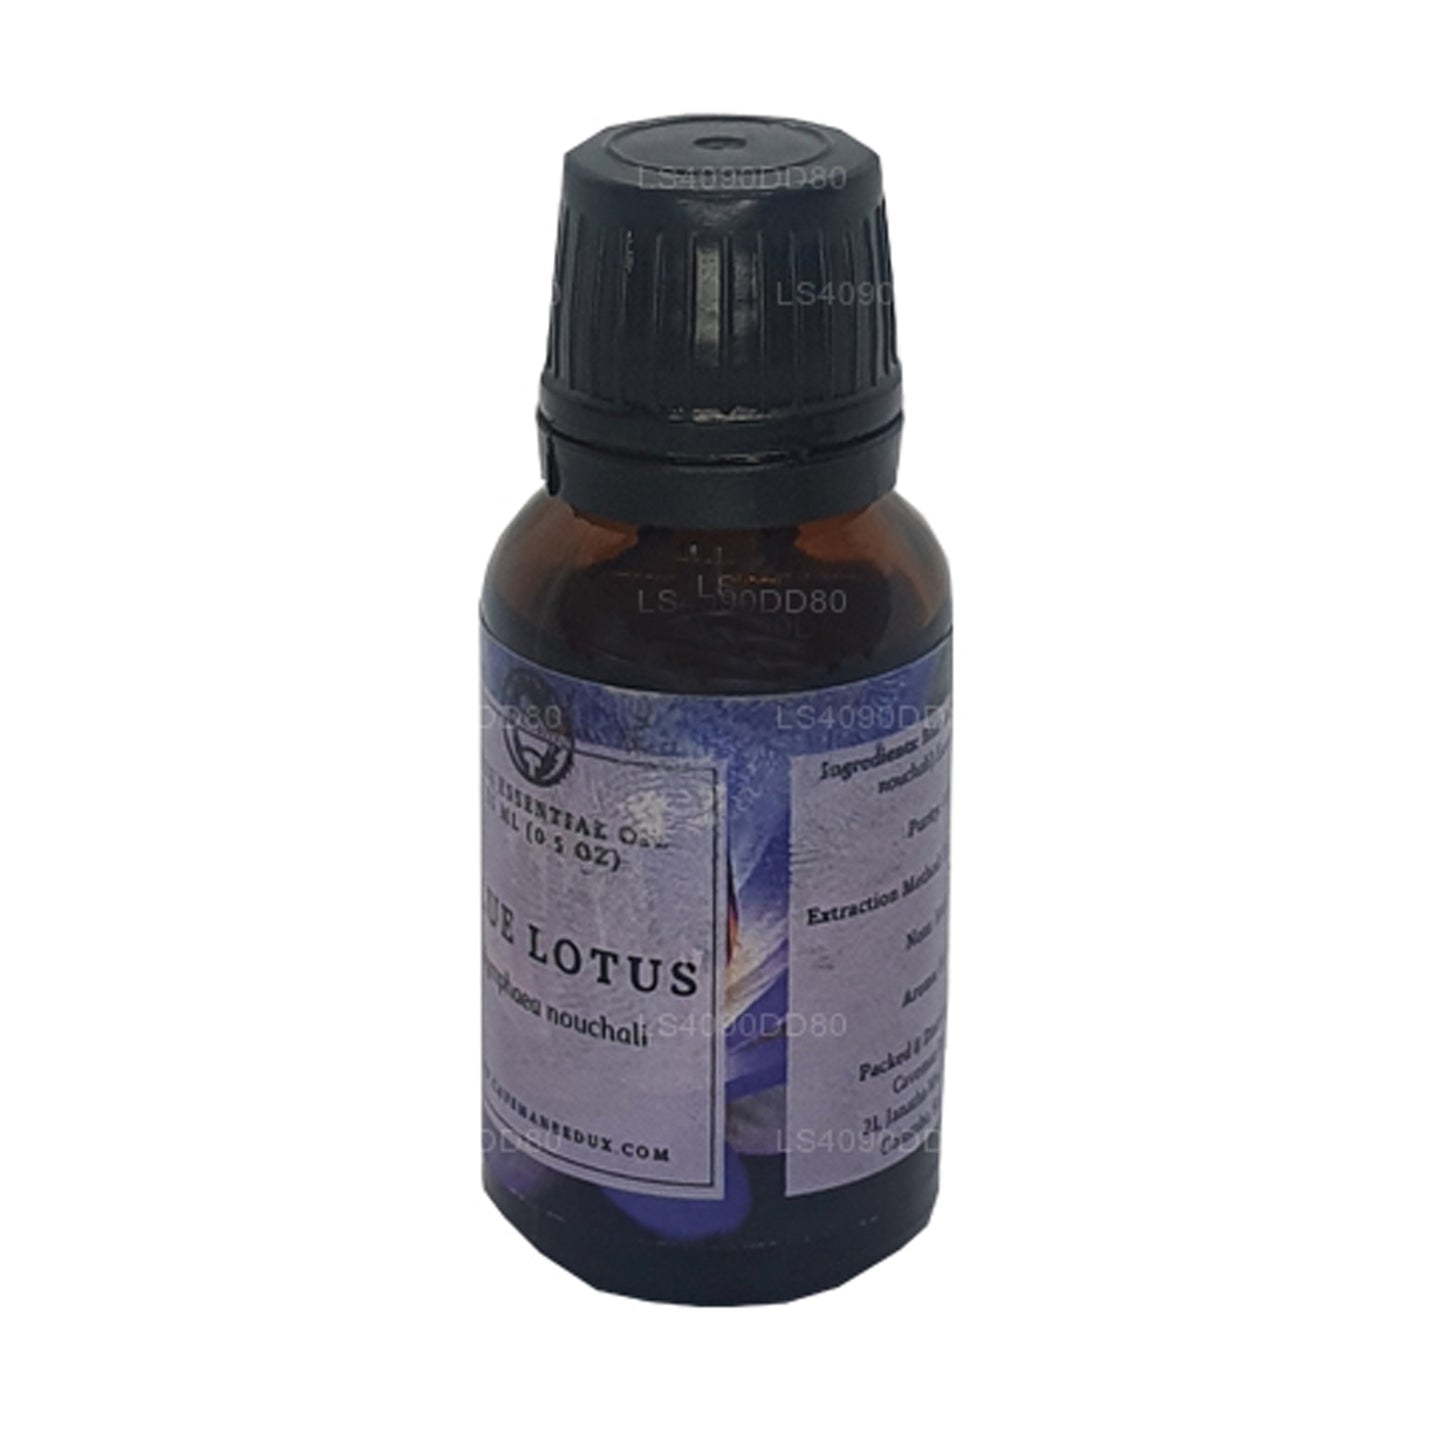 Lakpura Blue Lotus etherische olie (absoluut) (15 ml)